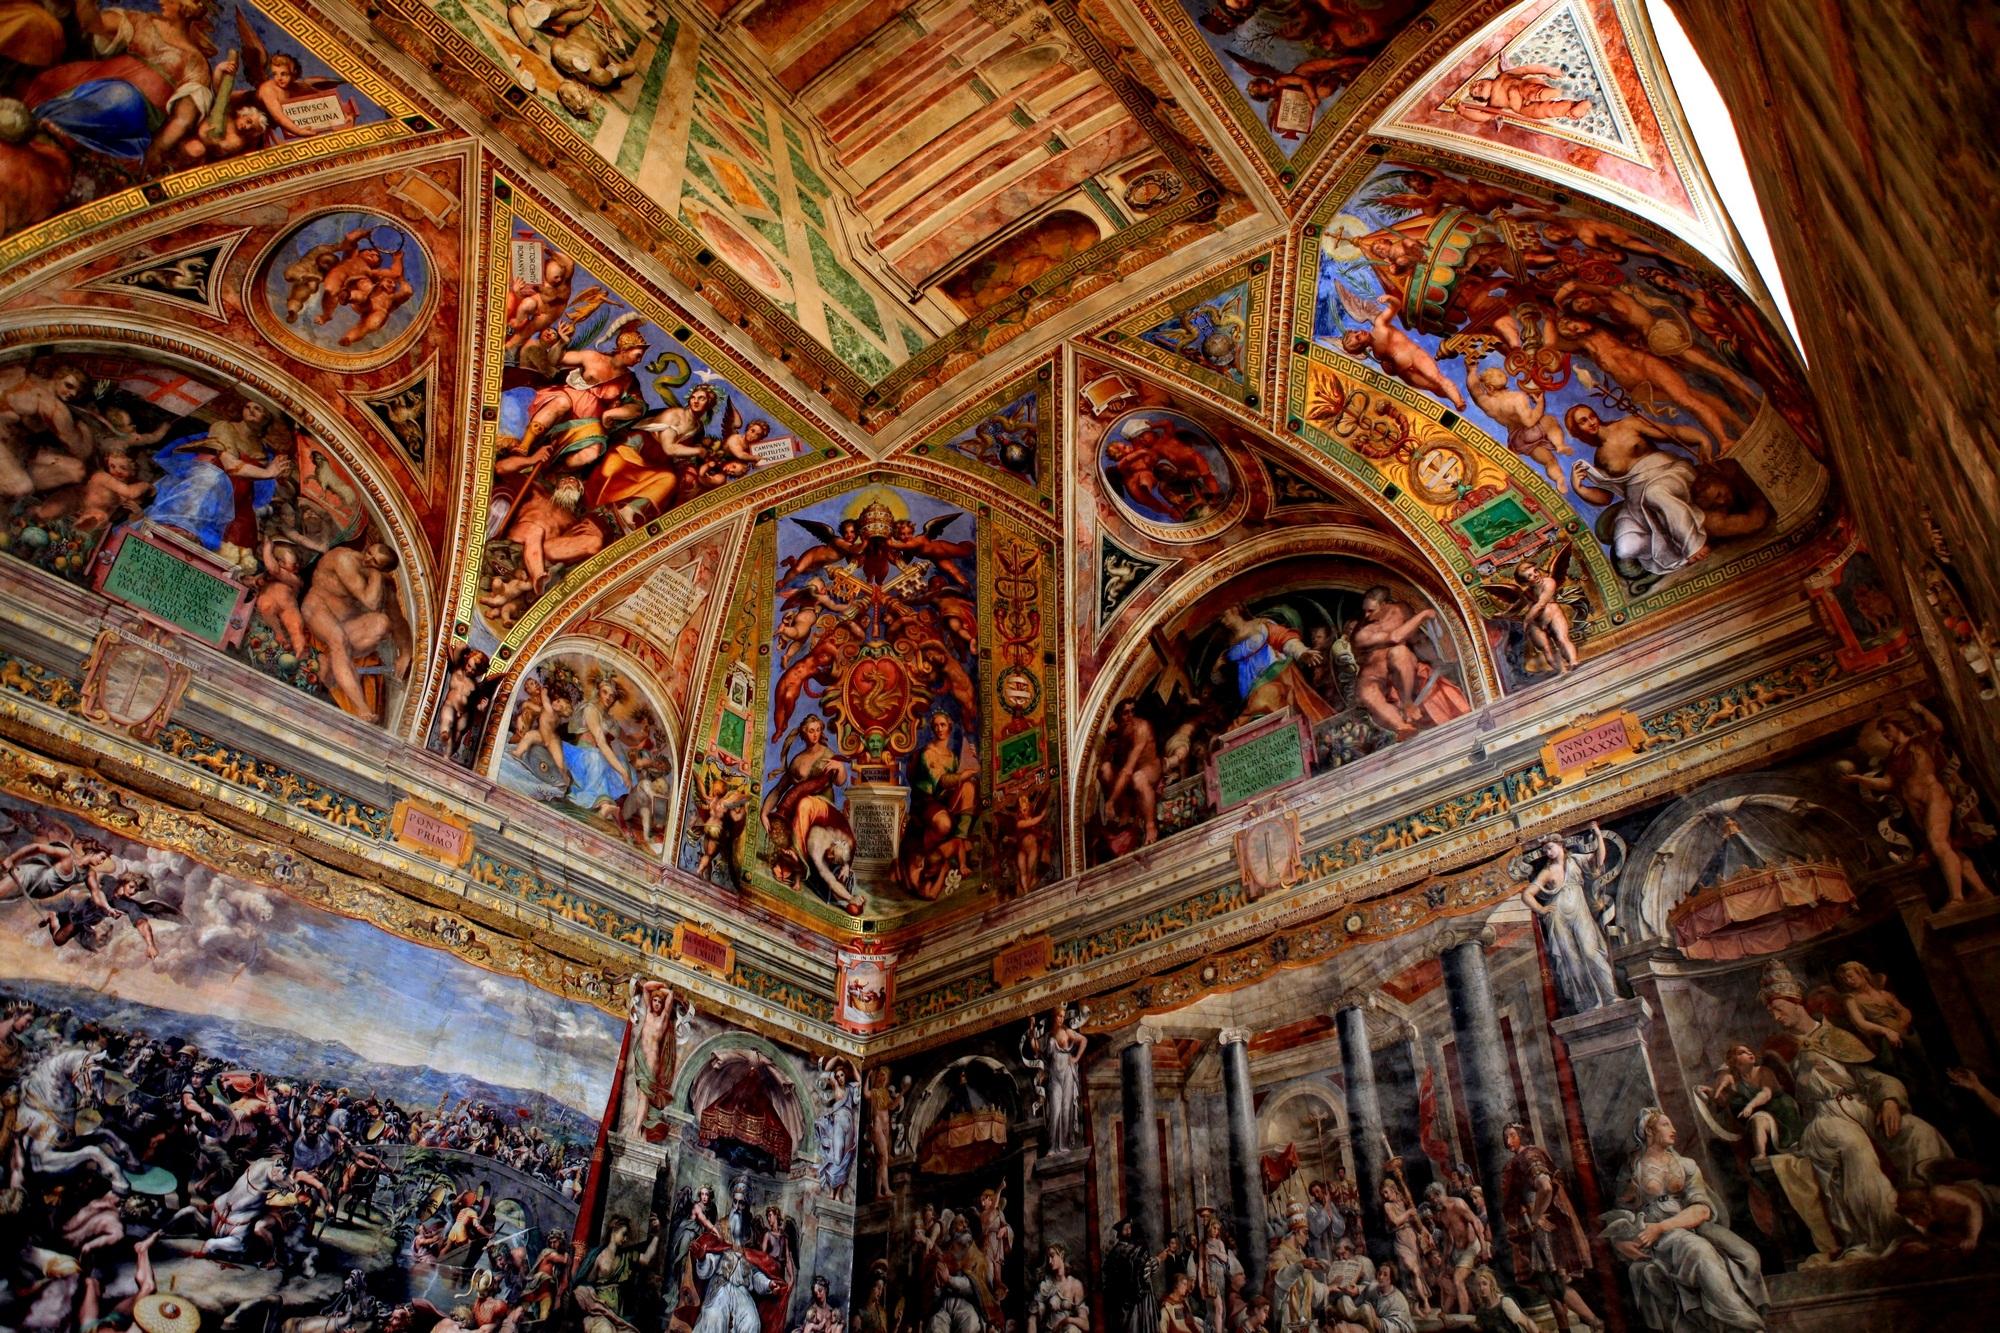 梵蒂冈博物馆(6)拉斐尔画室1 君士坦丁室壁画:君士坦丁大帝受洗与献礼